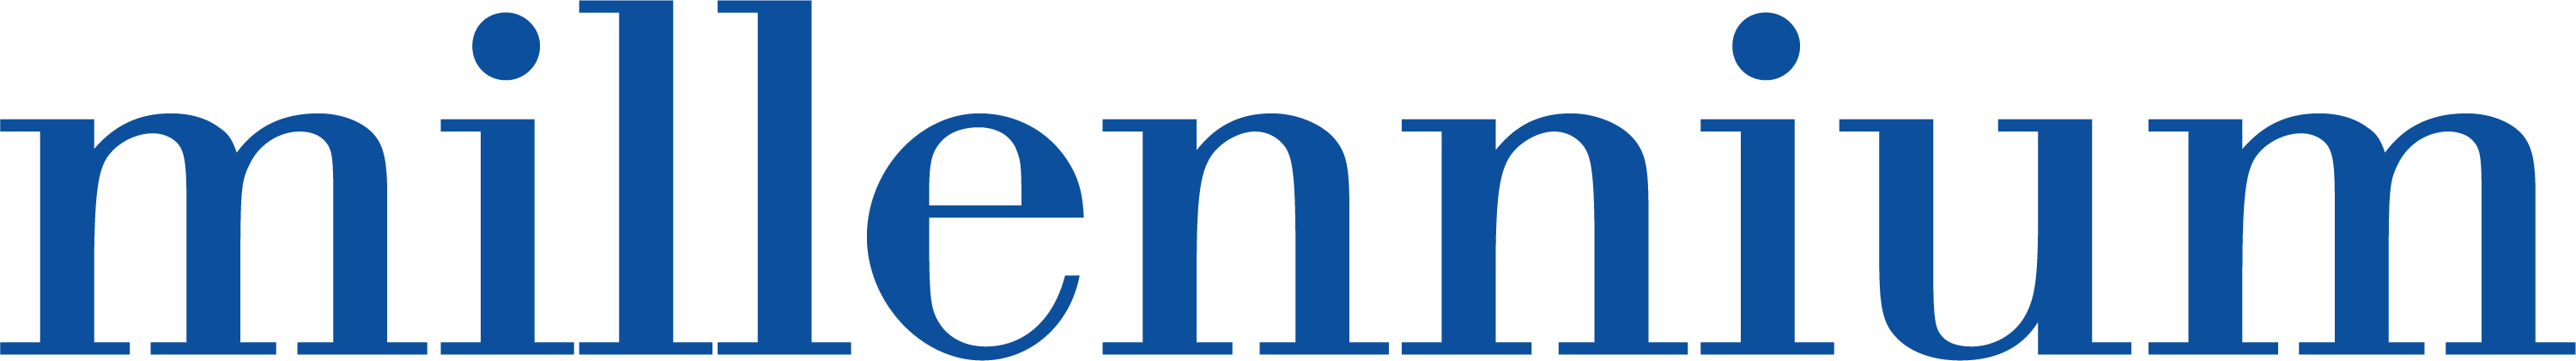 millenium logo